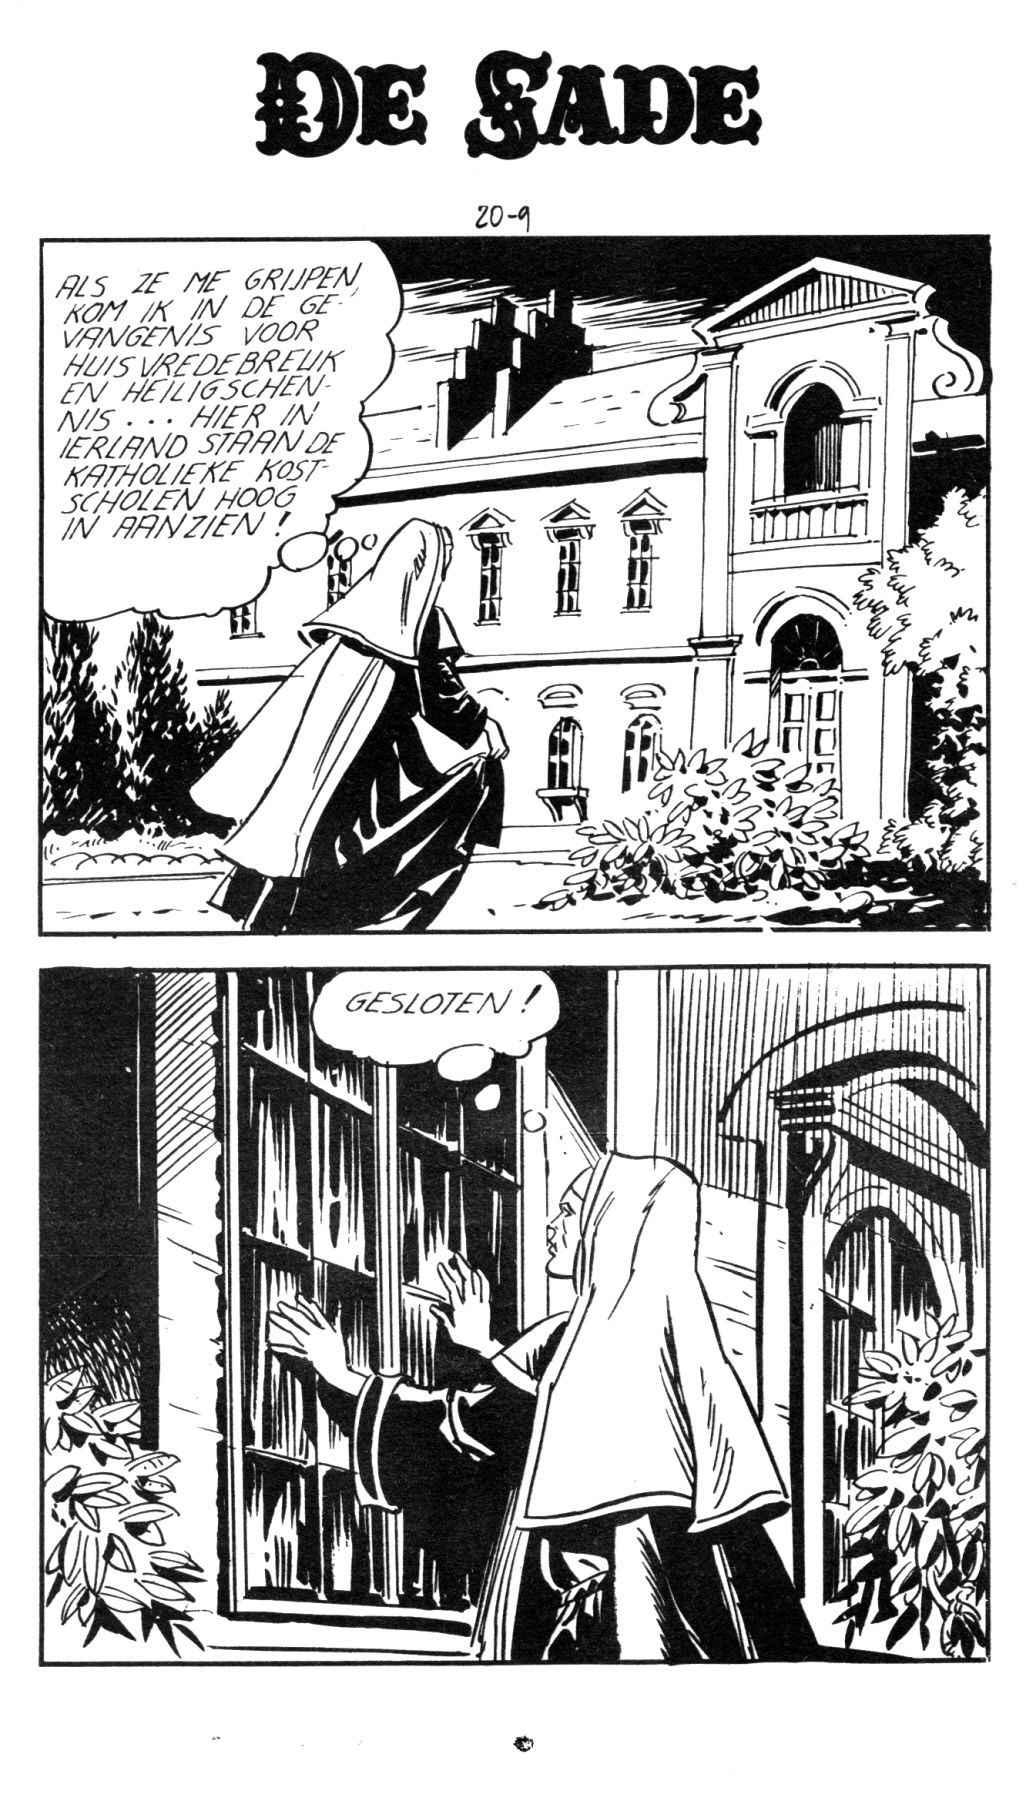 Orgieën In De Kostschool (Dutch) In 5 series...53 Nog niet geplaatste strips uit de "De Sade" serie 11